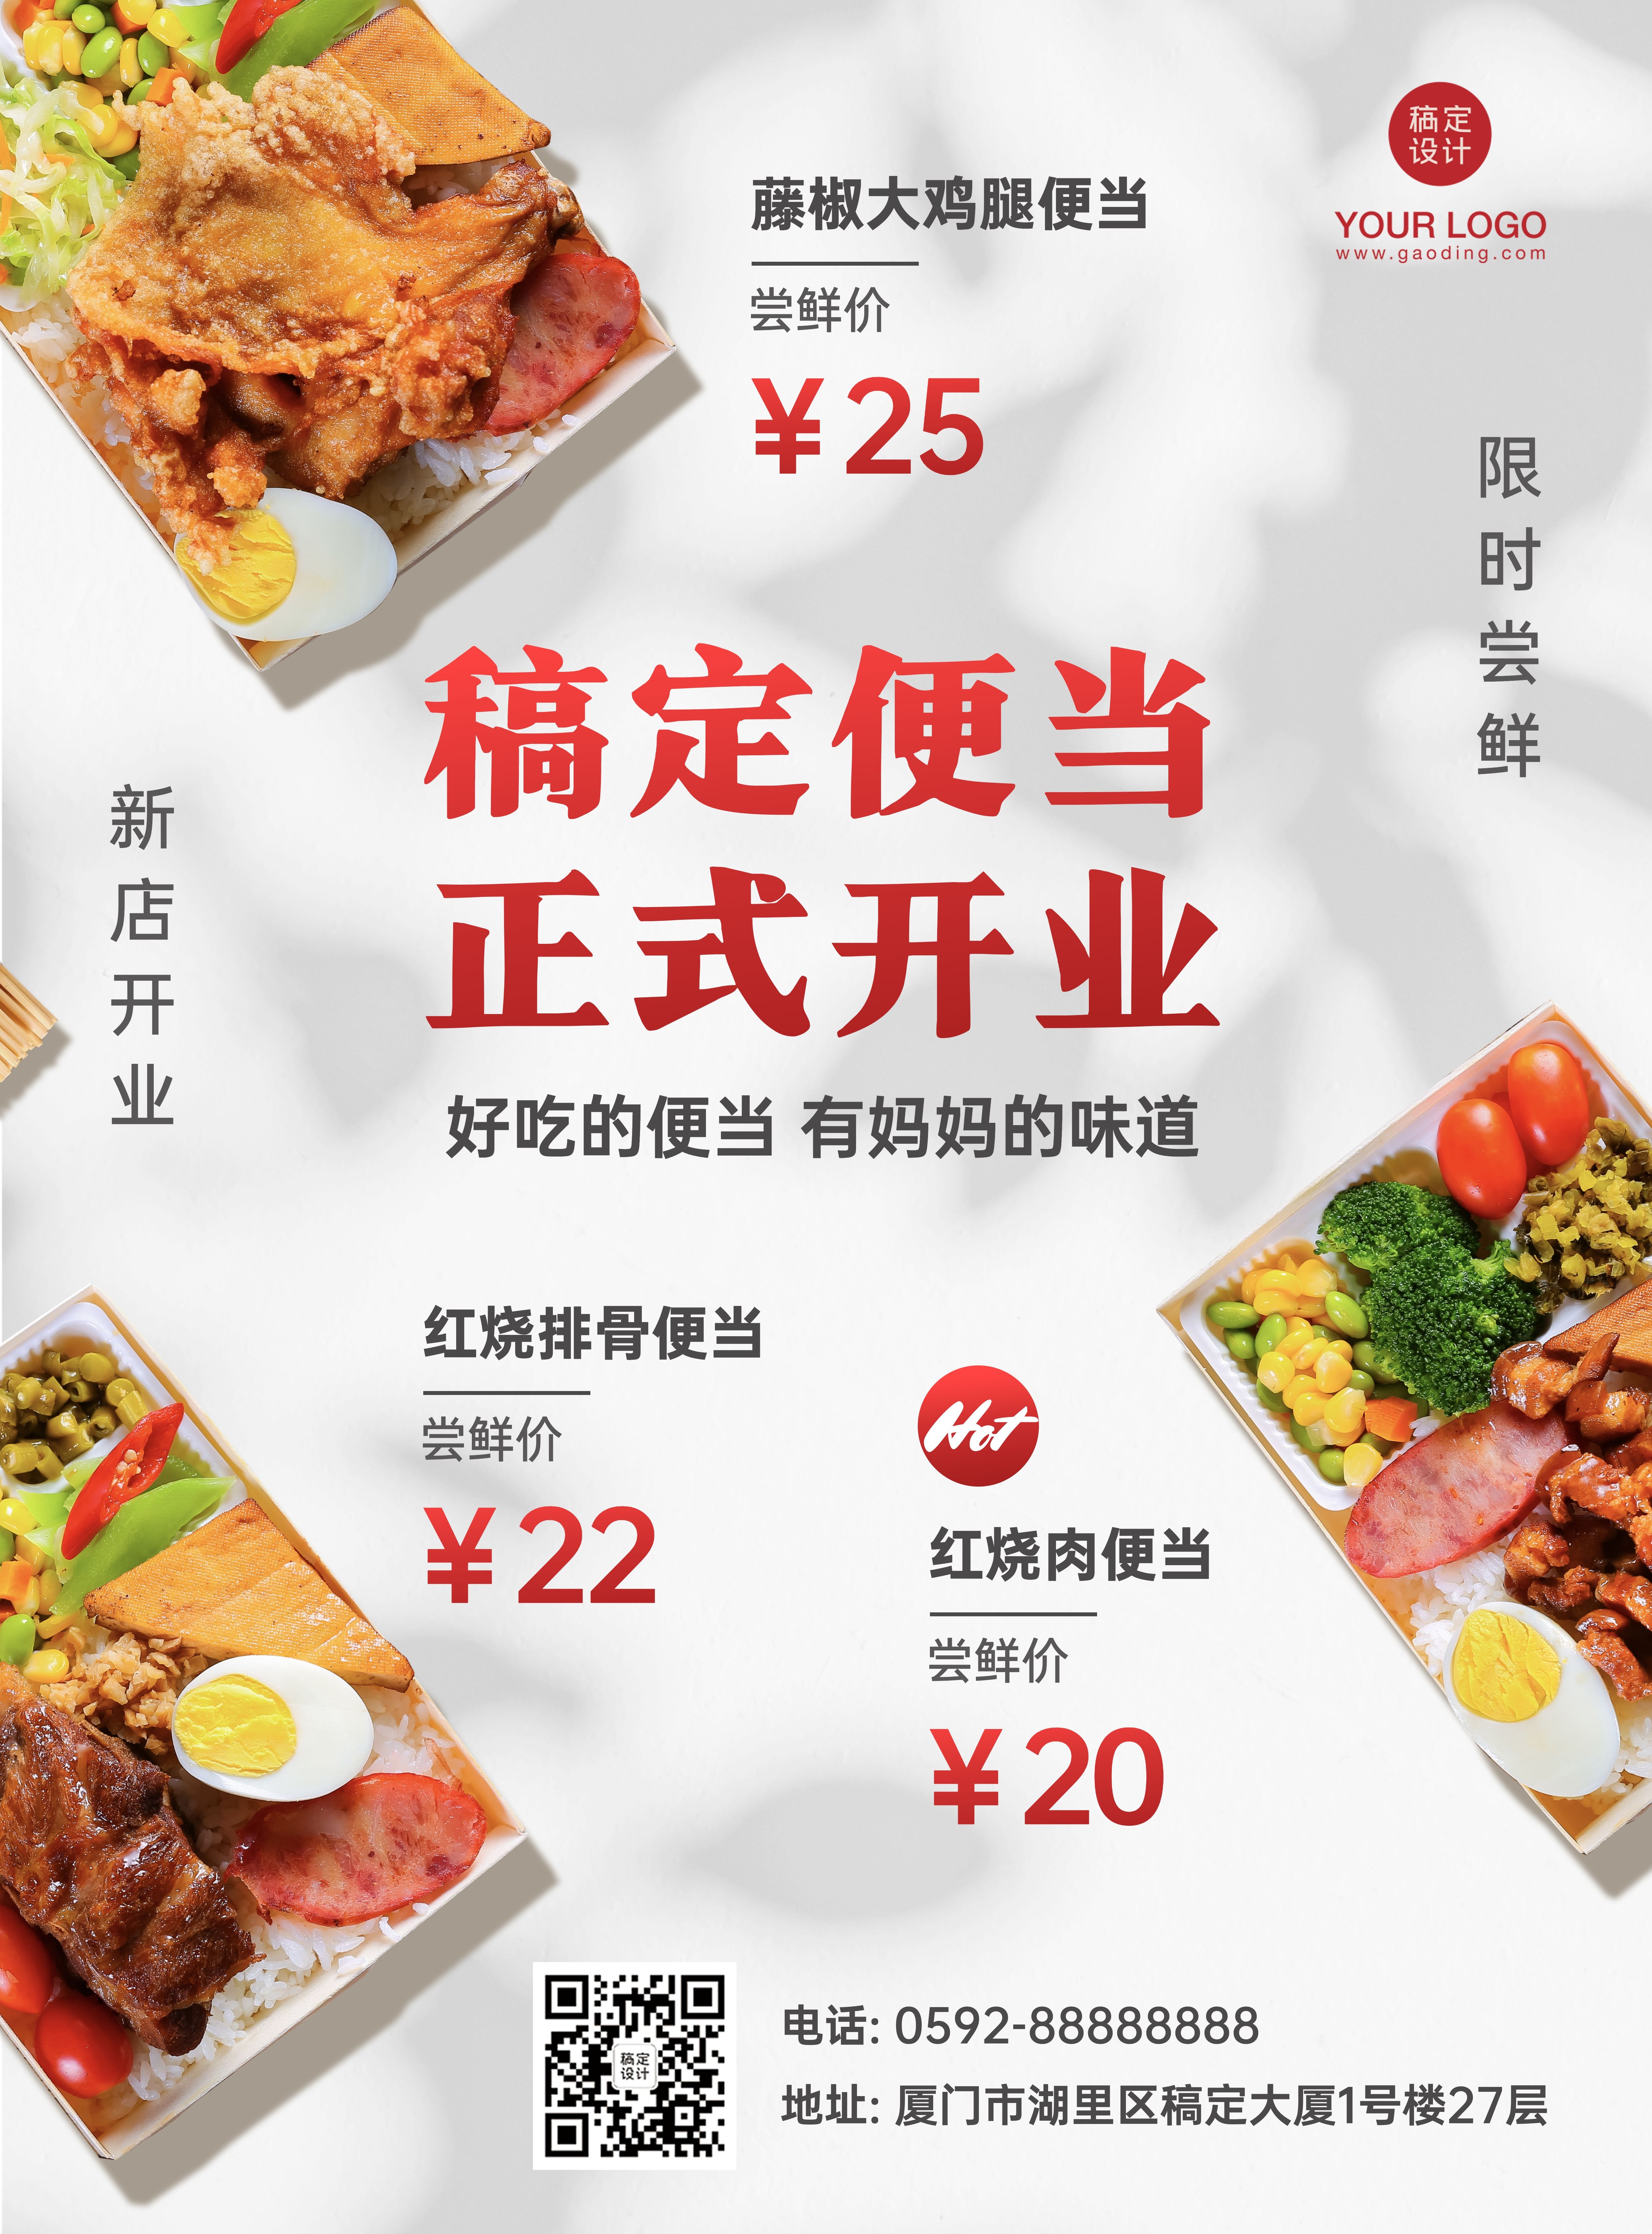 中式小吃便当开业活动张贴海报预览效果